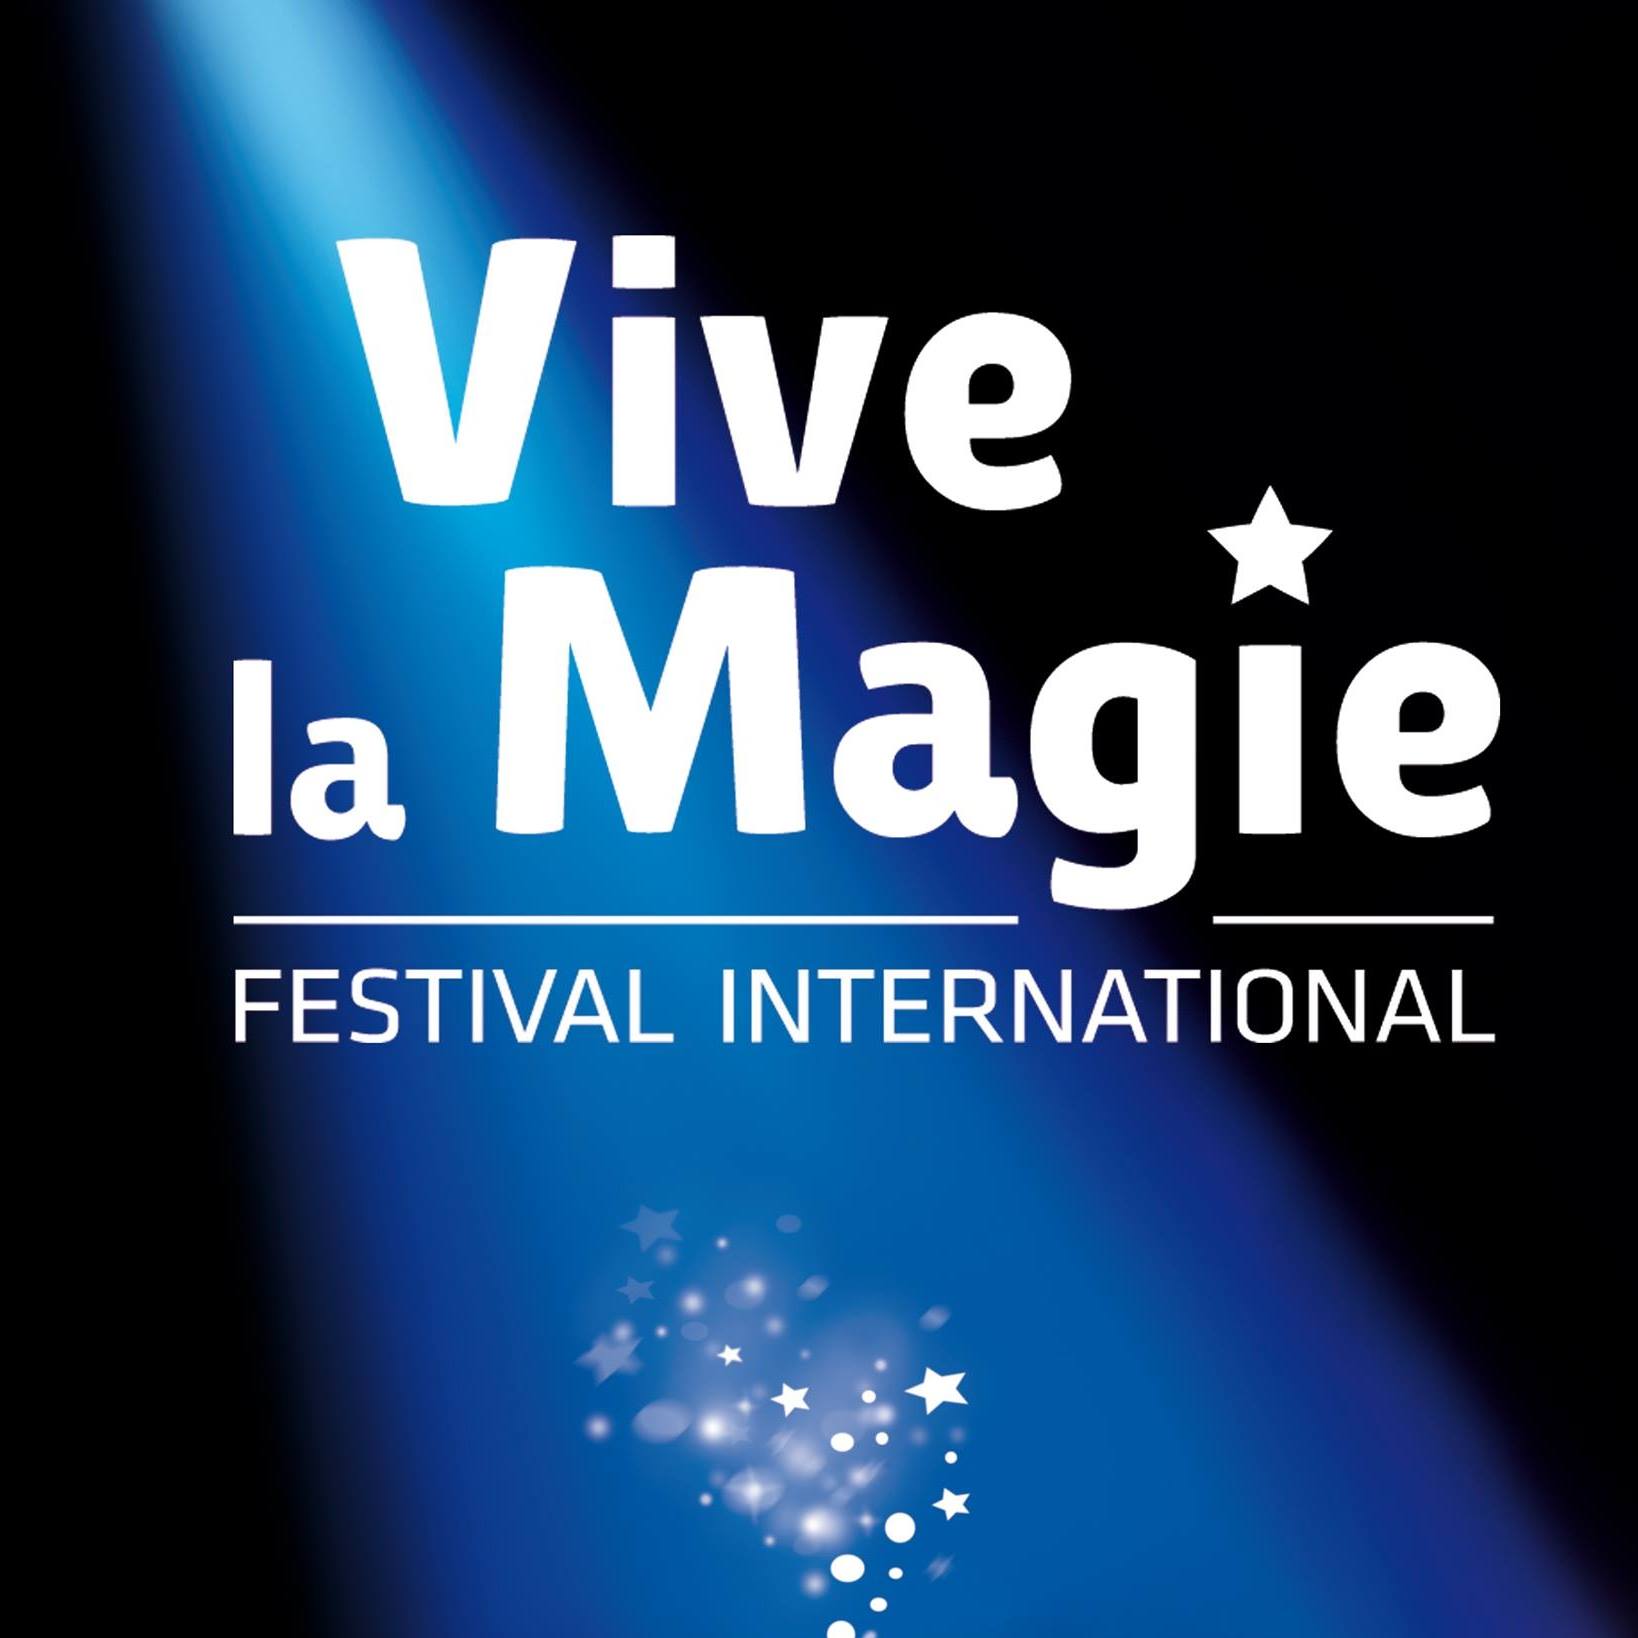 Festival International Vive La Magie 16ieme Edition al Les Angenoises Tickets